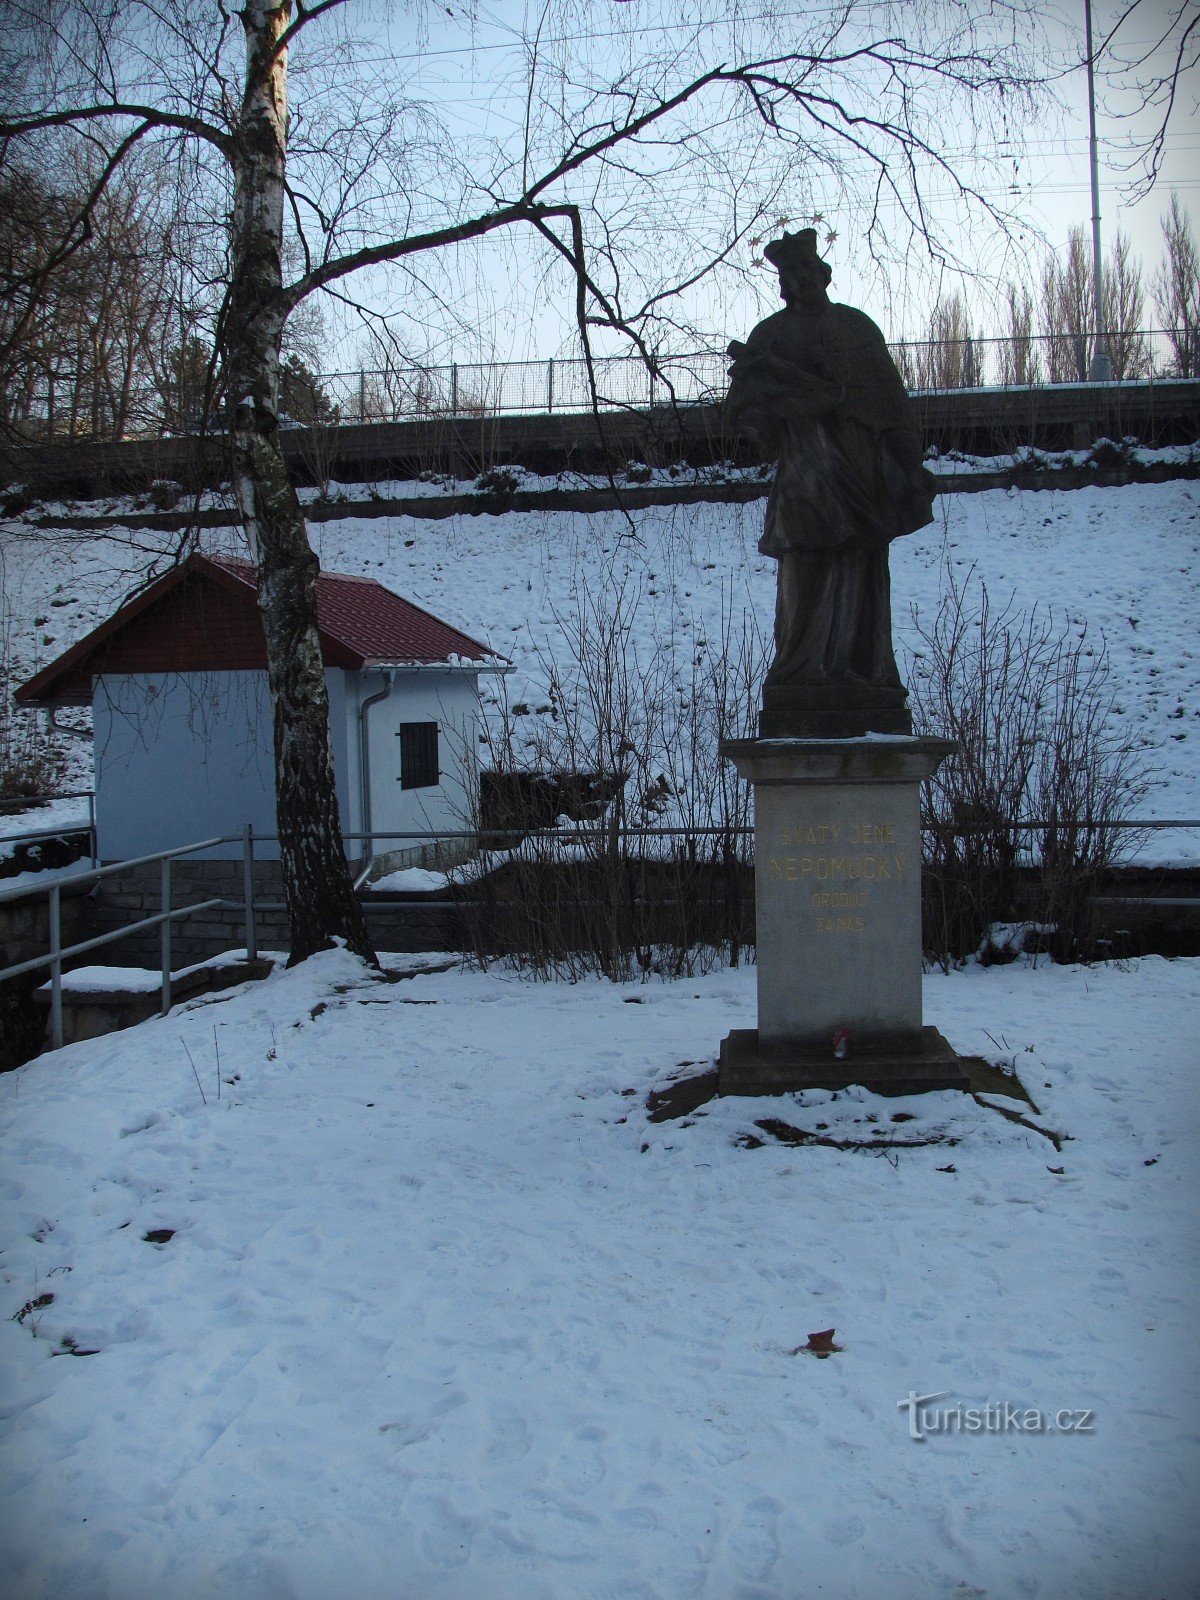 Злин - статуя святого Иоанна Непомуцкого